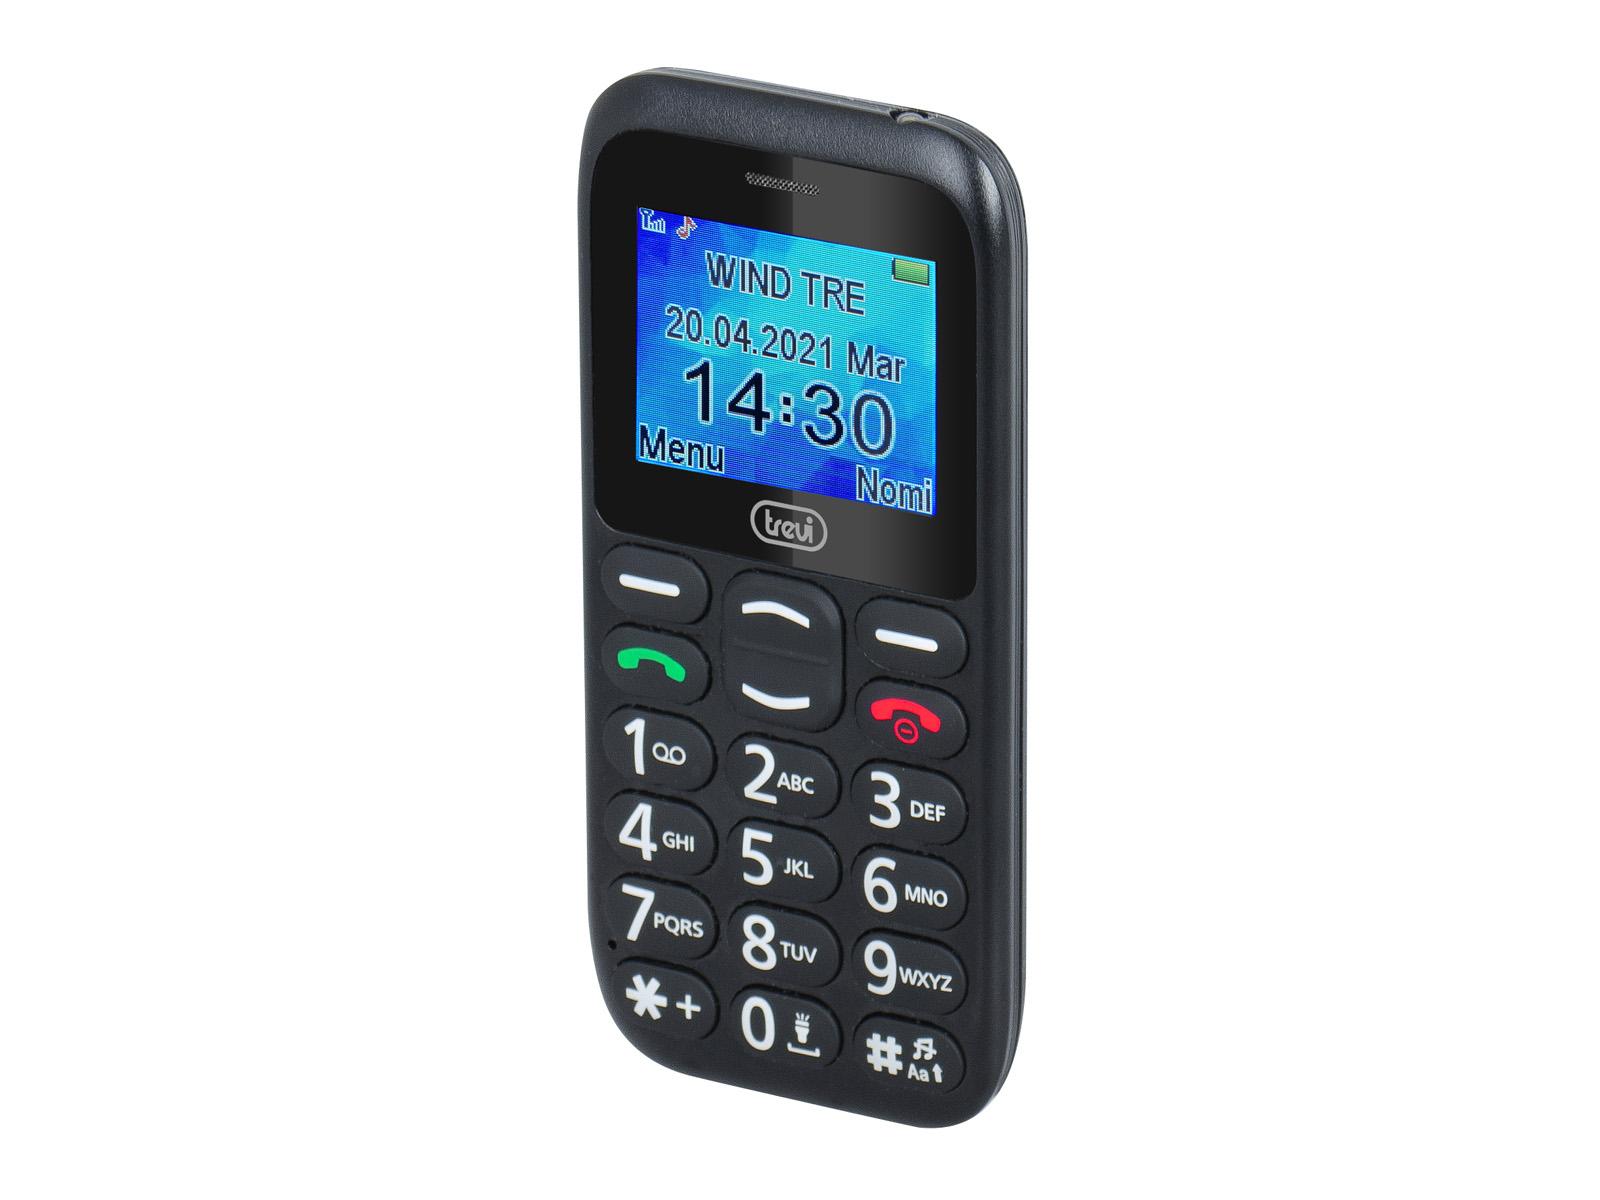 Telefono Cellulare con Grandi Tasti e Funzione SOS Trevi MAX 20 Argento